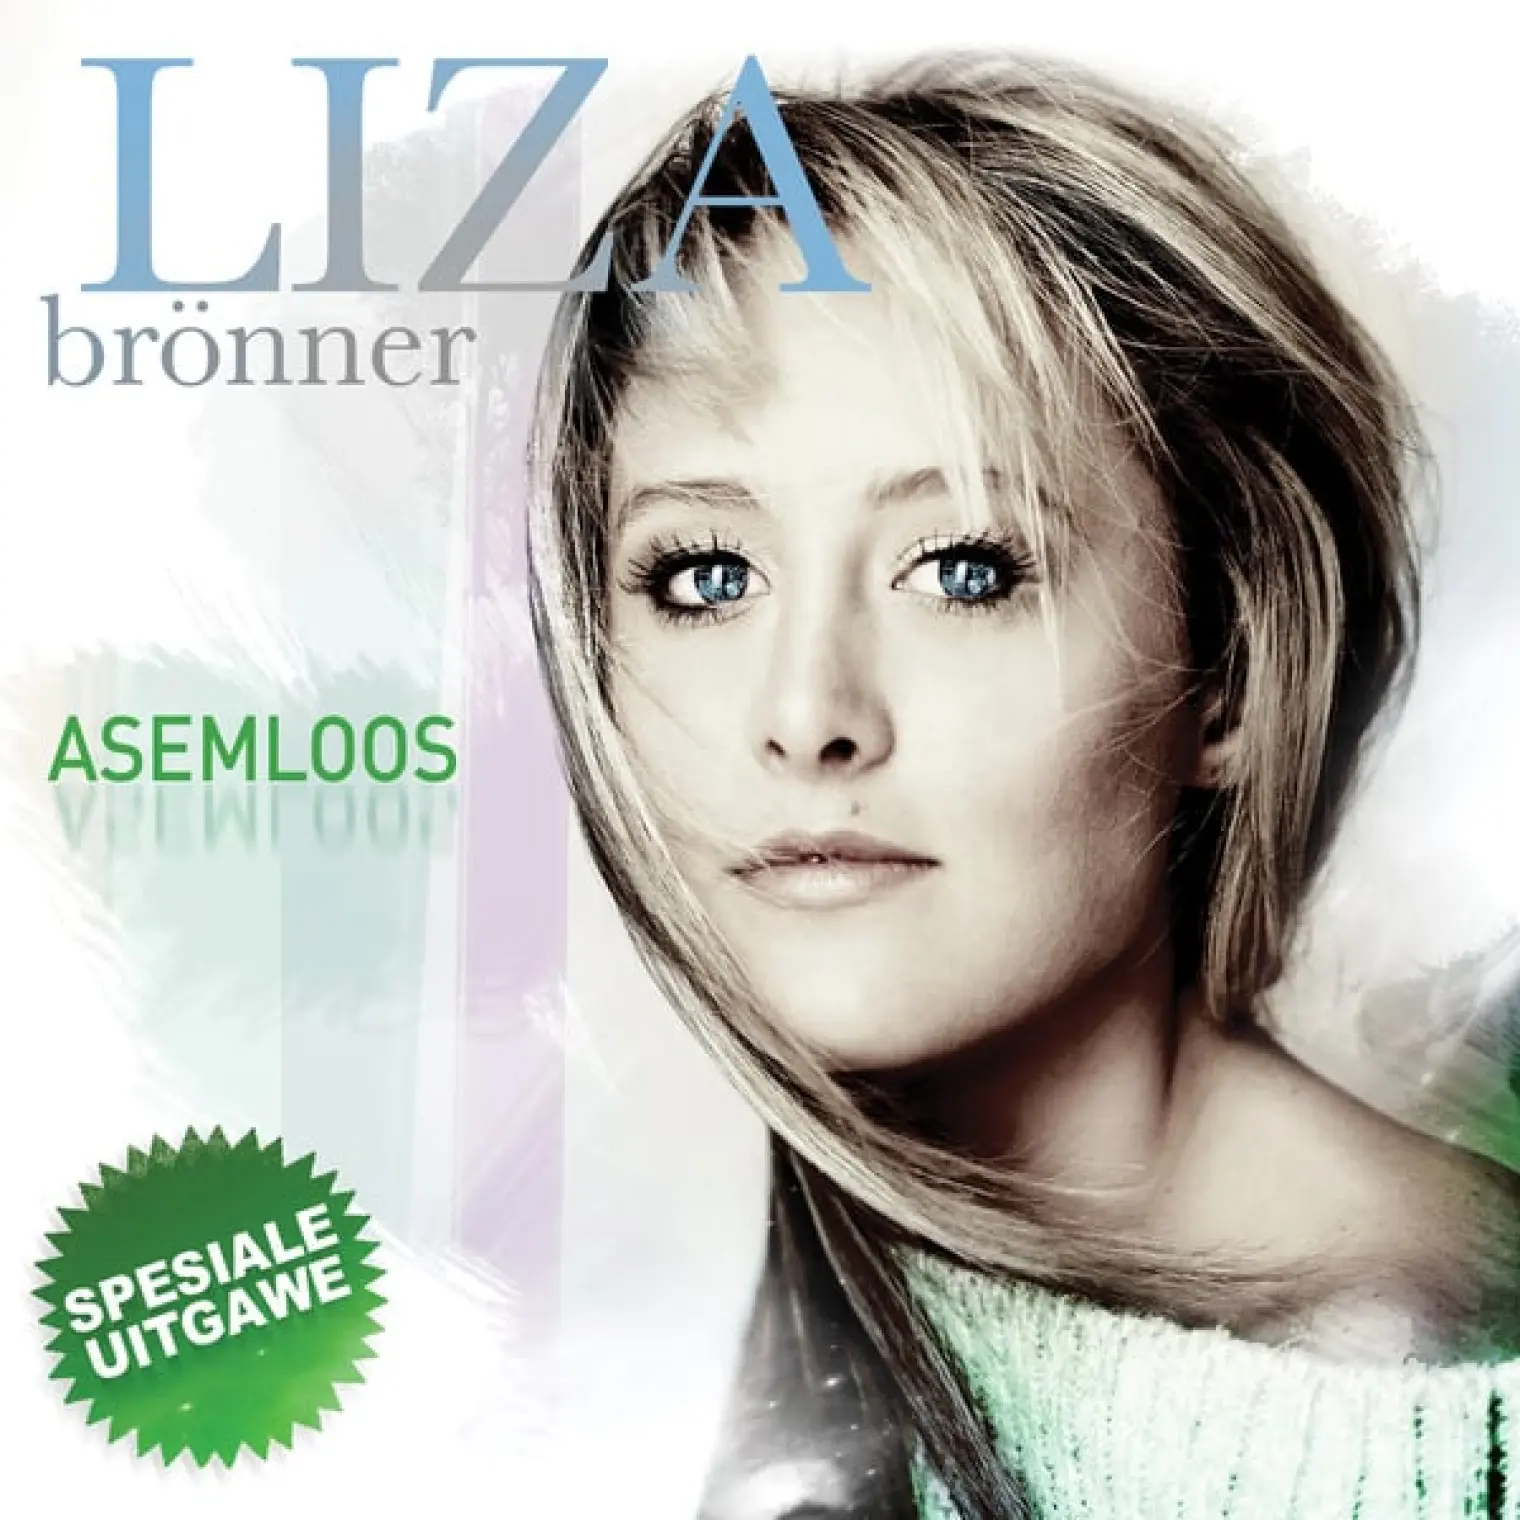 Asemloos (Onderstebo Repack) -  Liza Bronner 